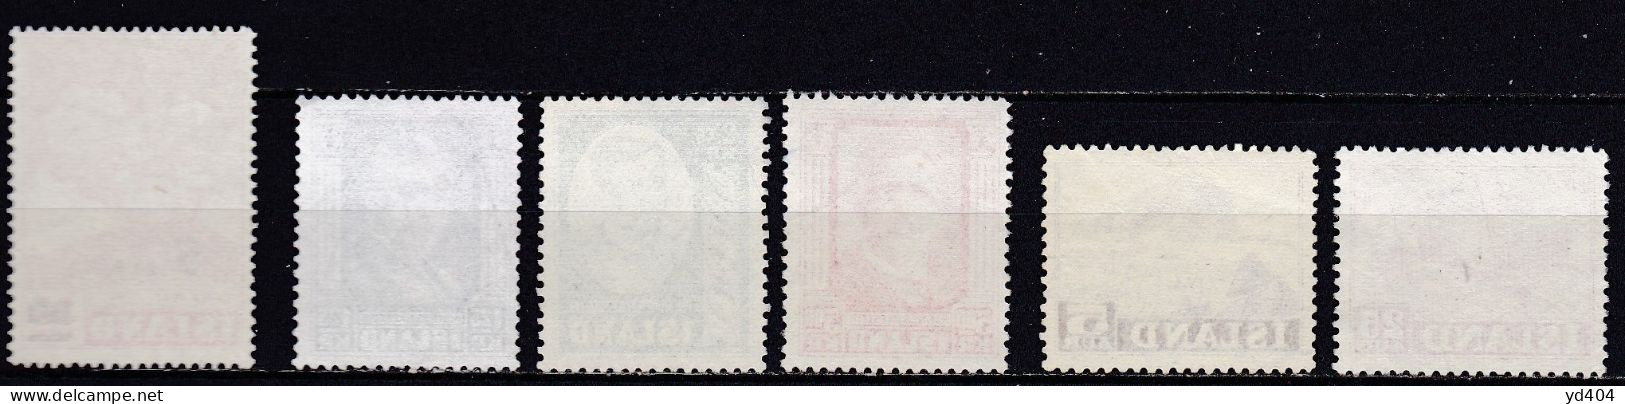 IS059C – ISLANDE – ICELAND – 1954 – FULL YEAR SET – MI # 292/7 USED - Used Stamps